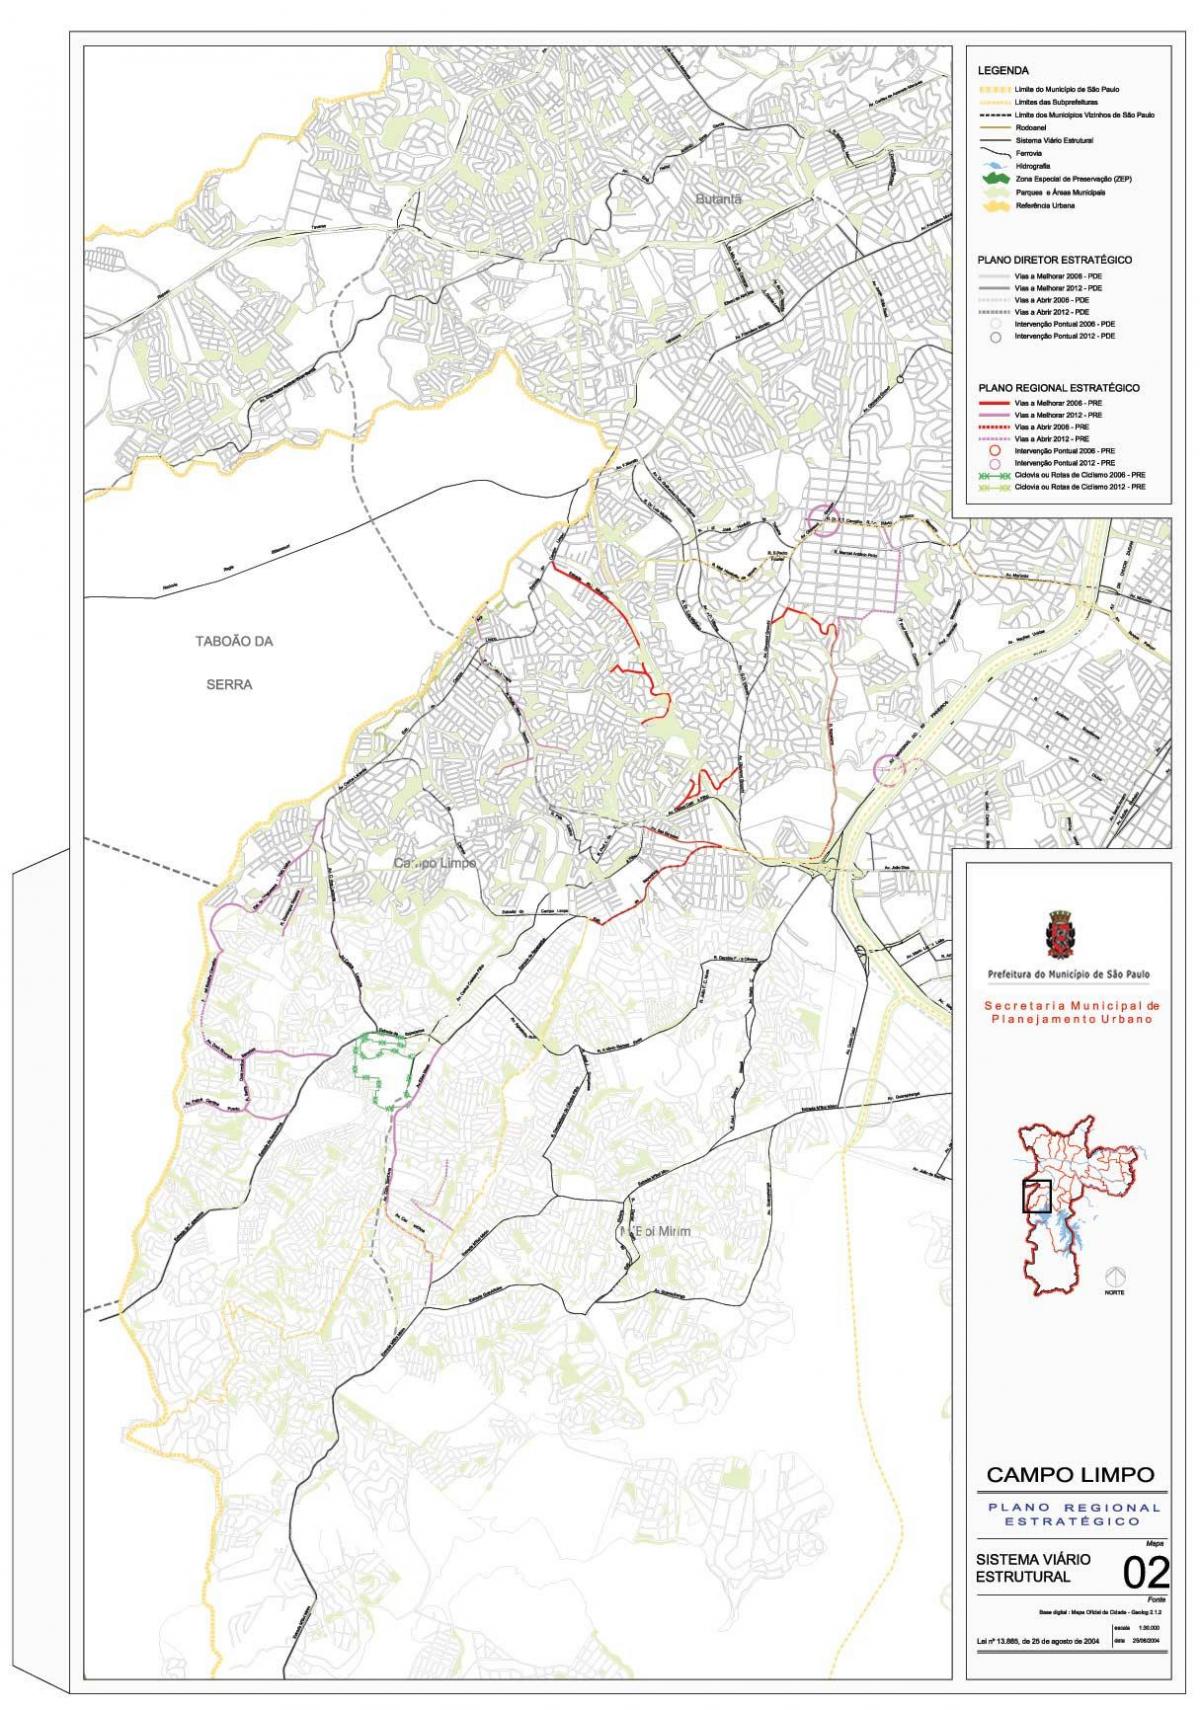 Map of Campo Limpo São Paulo - Roads